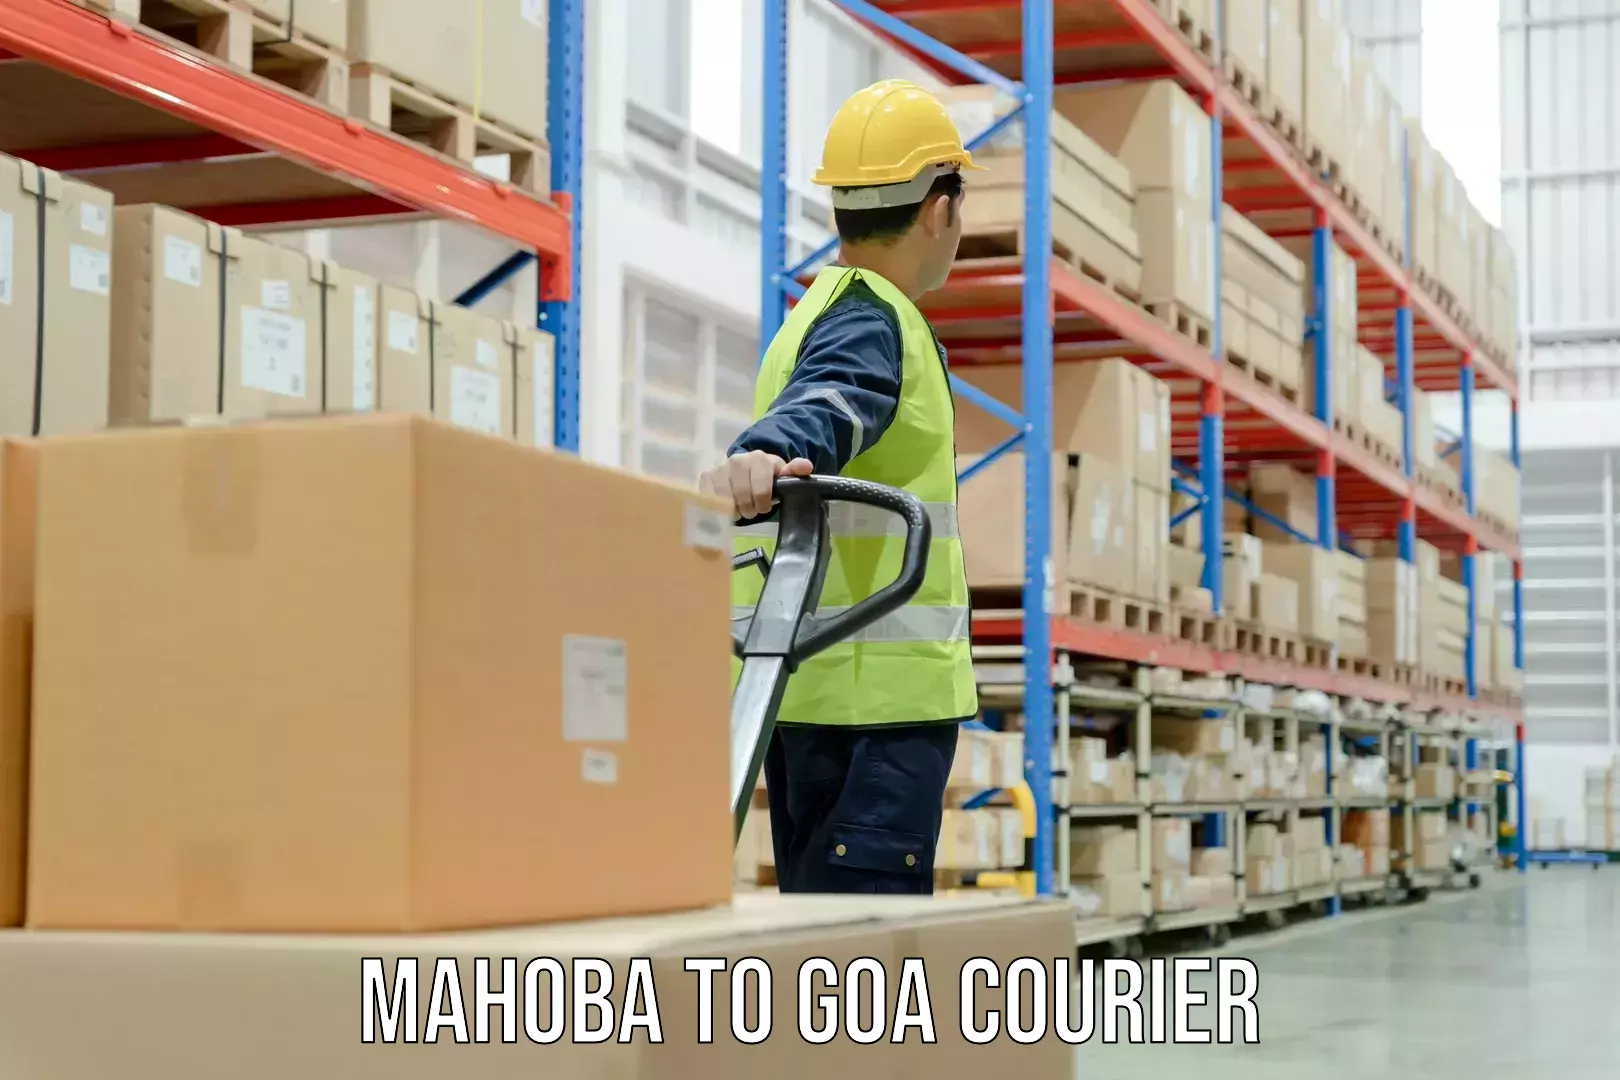 Specialized shipment handling in Mahoba to Vasco da Gama